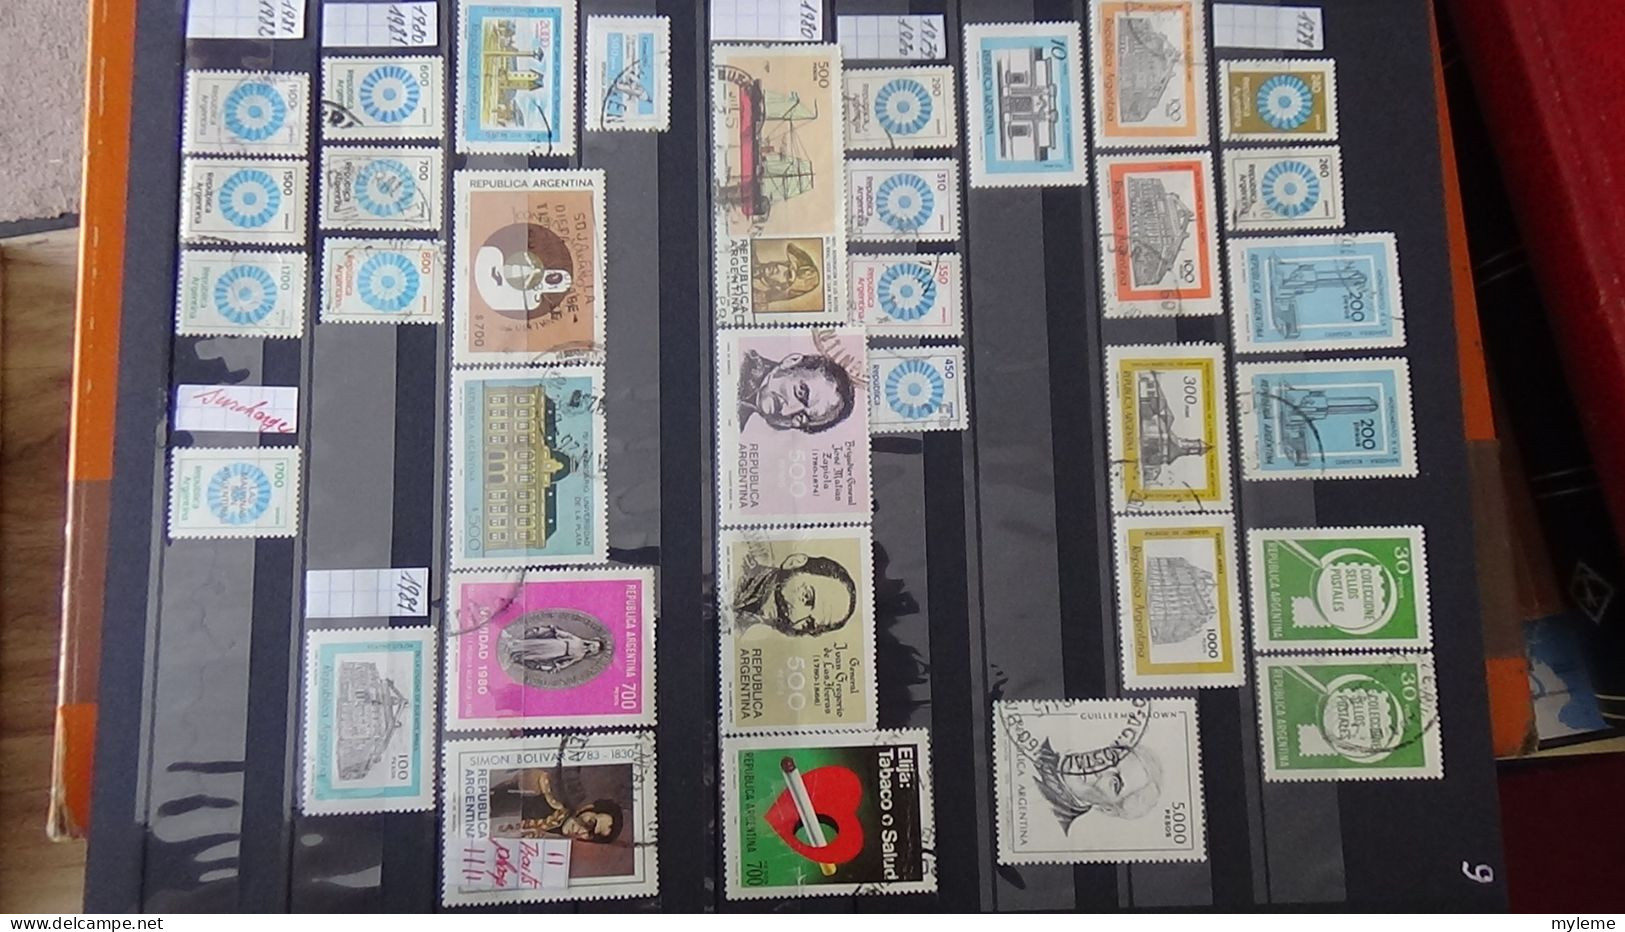 BF35 Ensemble de timbres de divers pays + France N° 252 + 256 **  Cote 420 euros